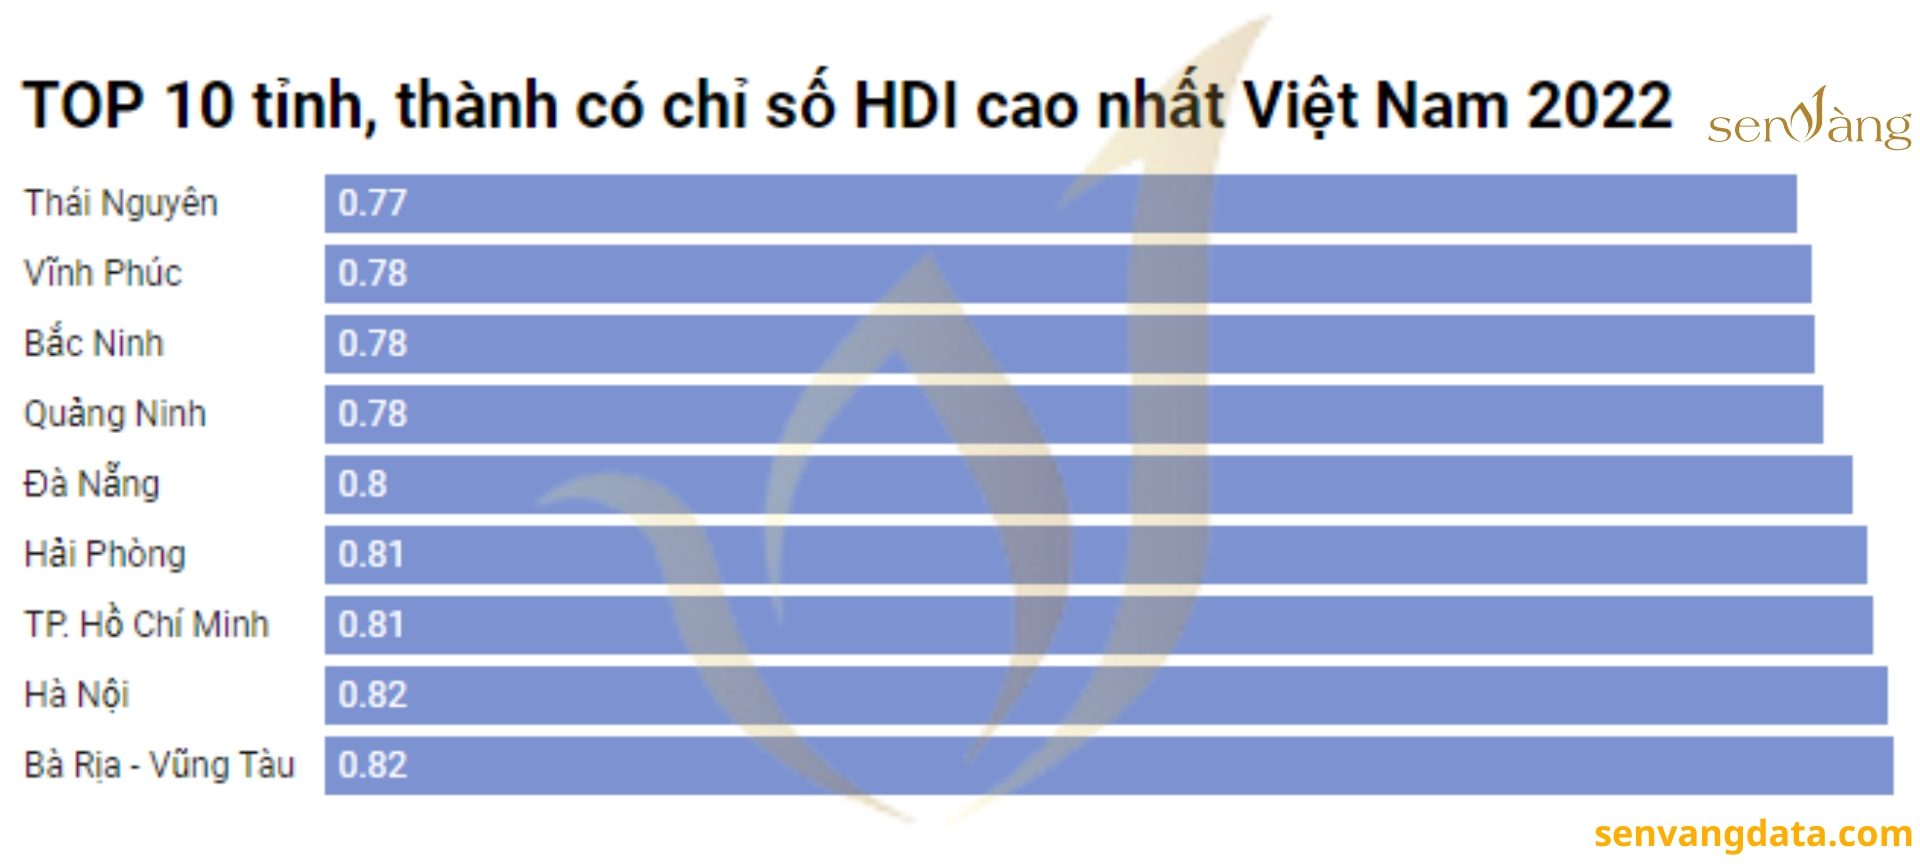 TOP 10 tỉnh, thành có chỉ số HDI cao nhất Việt Nam 2022. Nguồn: Số liệu thống kê từ Niên giám thống kê 2022